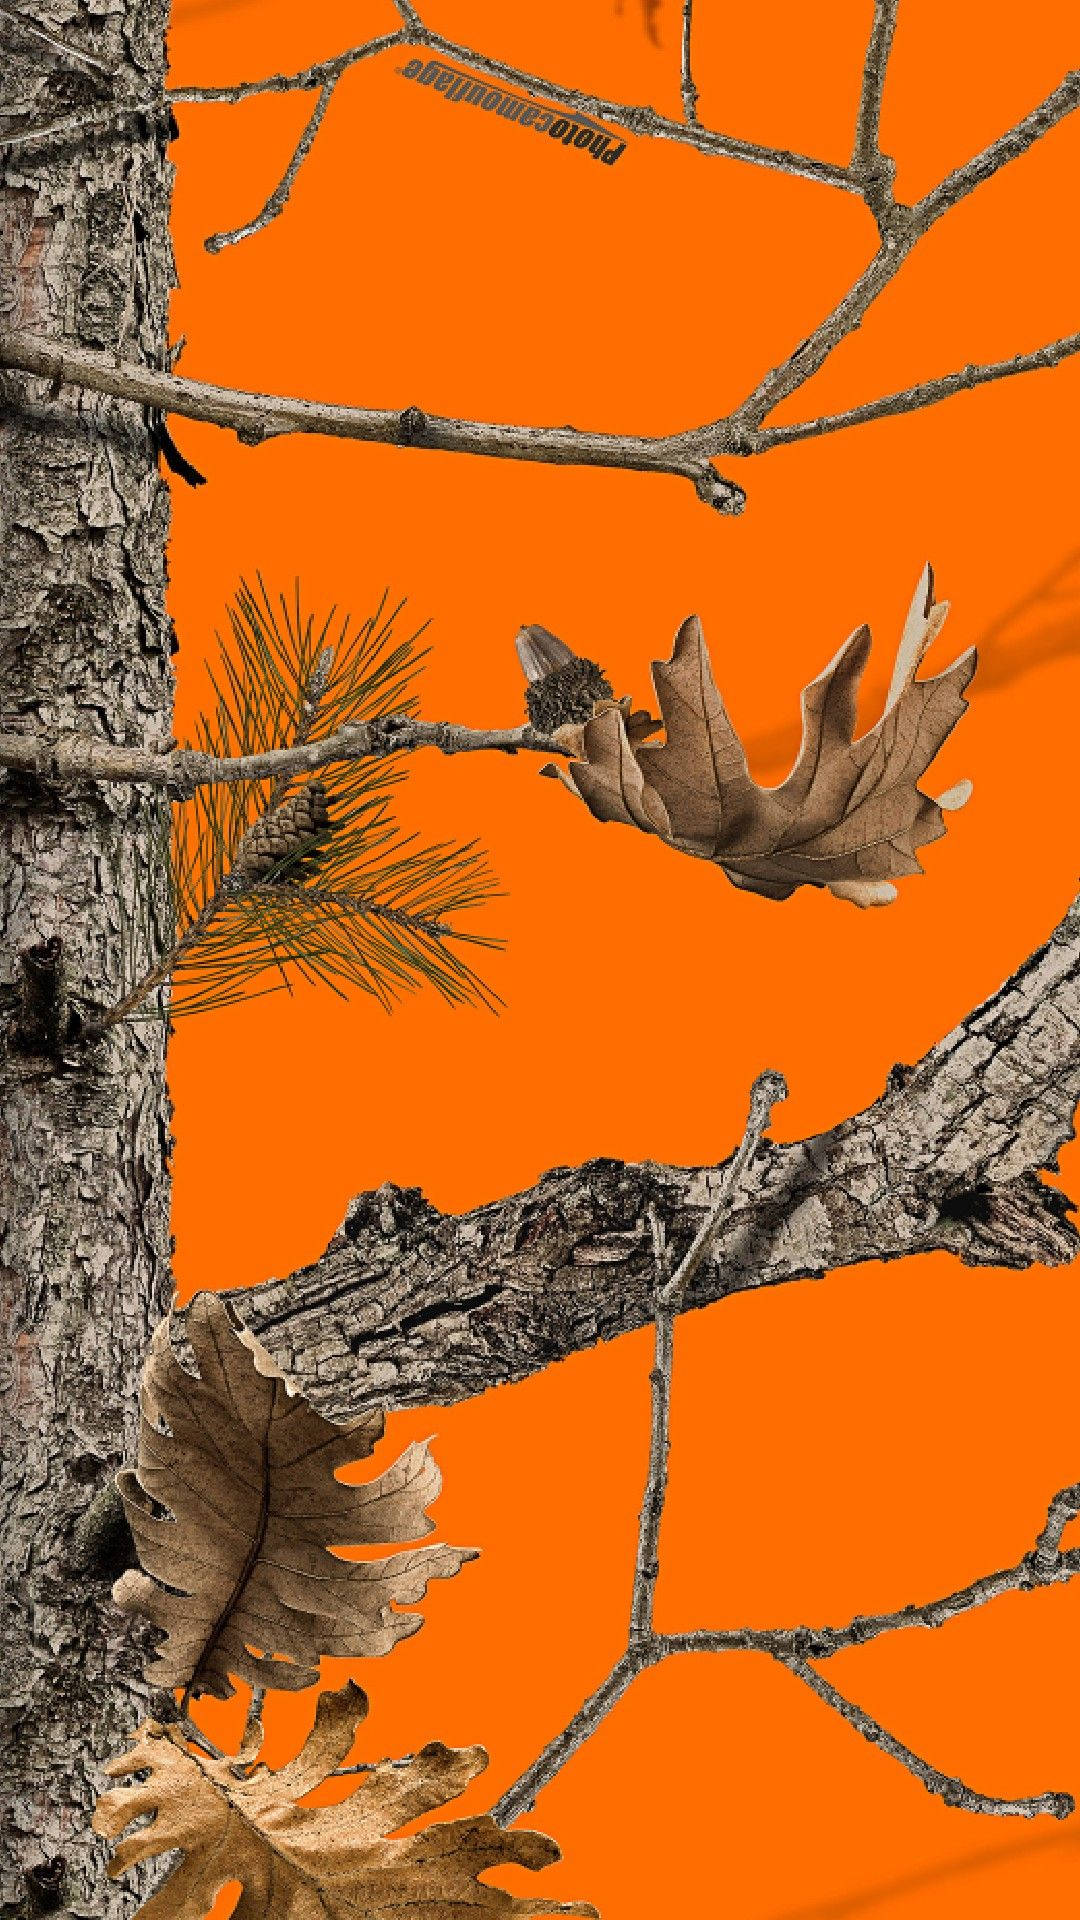 mossy oak backgrounds for desktop